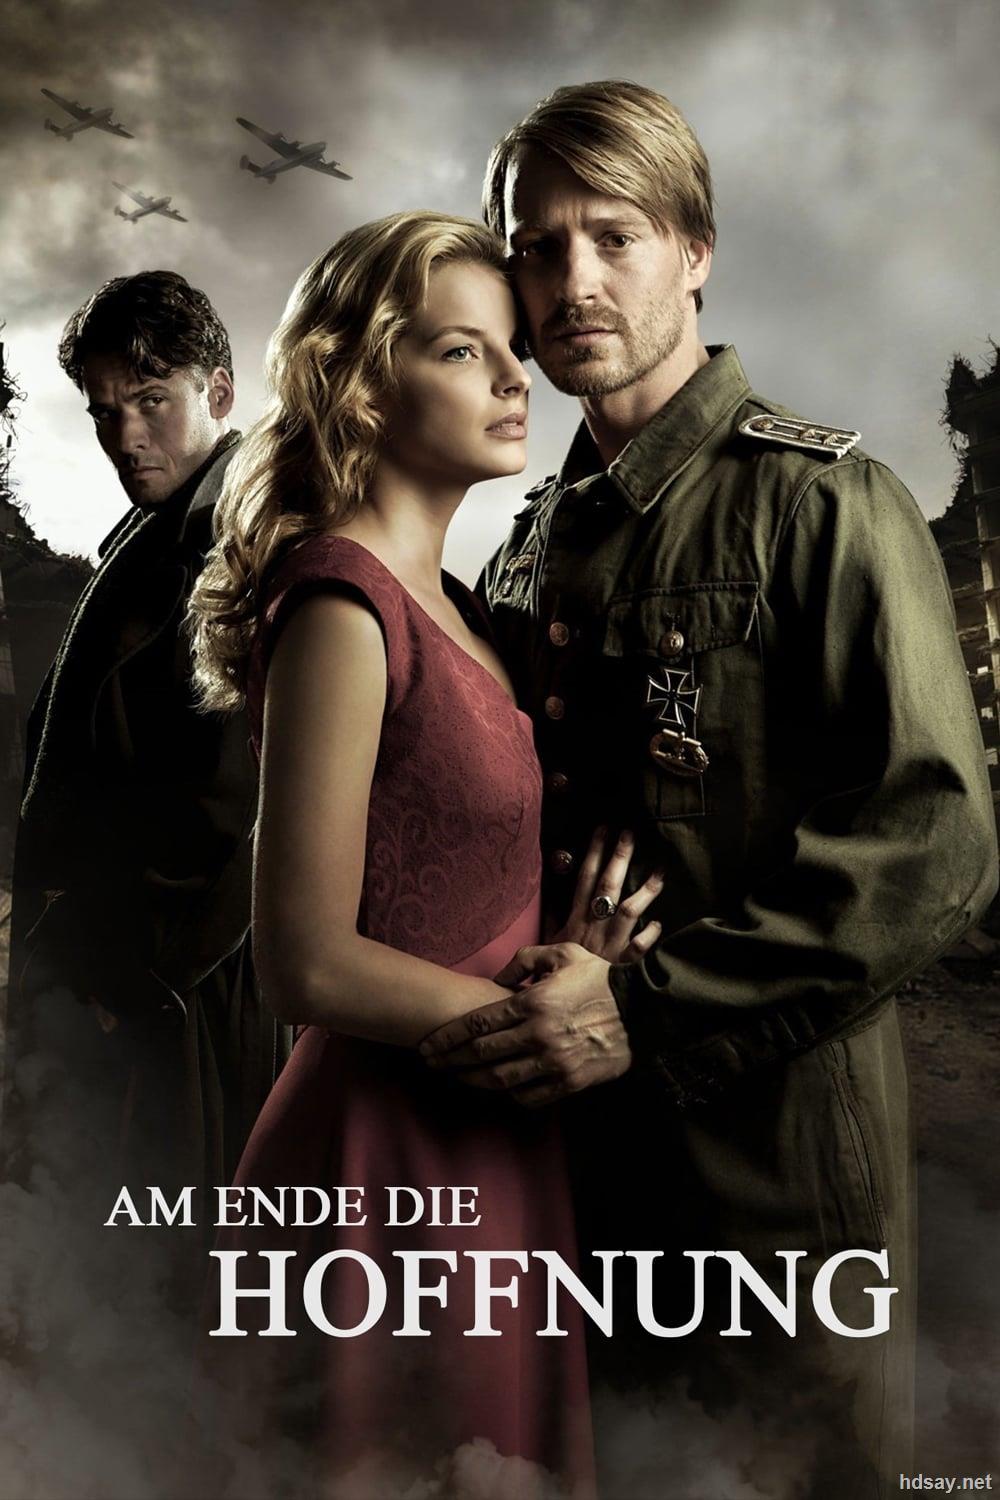 希特勒最后的秘密武器 Am Ende die Hoffnung (2011)